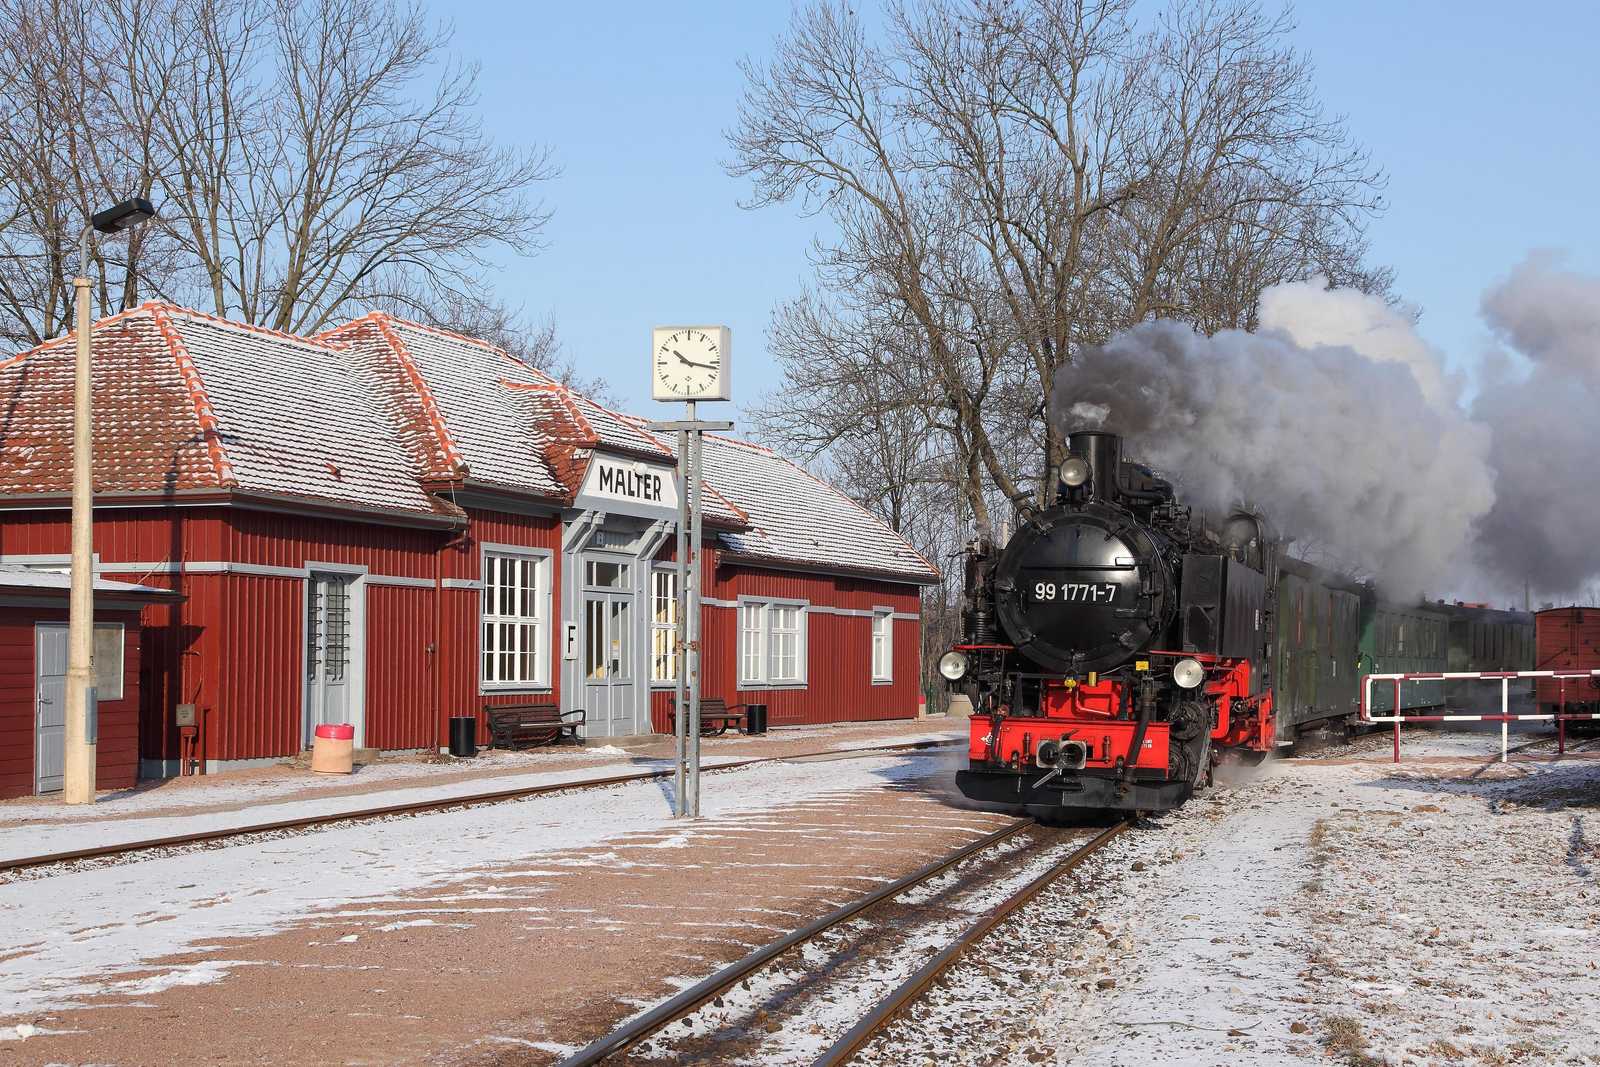 Ein Zug mit 99 1771-7 vor dem vorbildlich erhaltenen Bahnhofsgebäude von Malter.